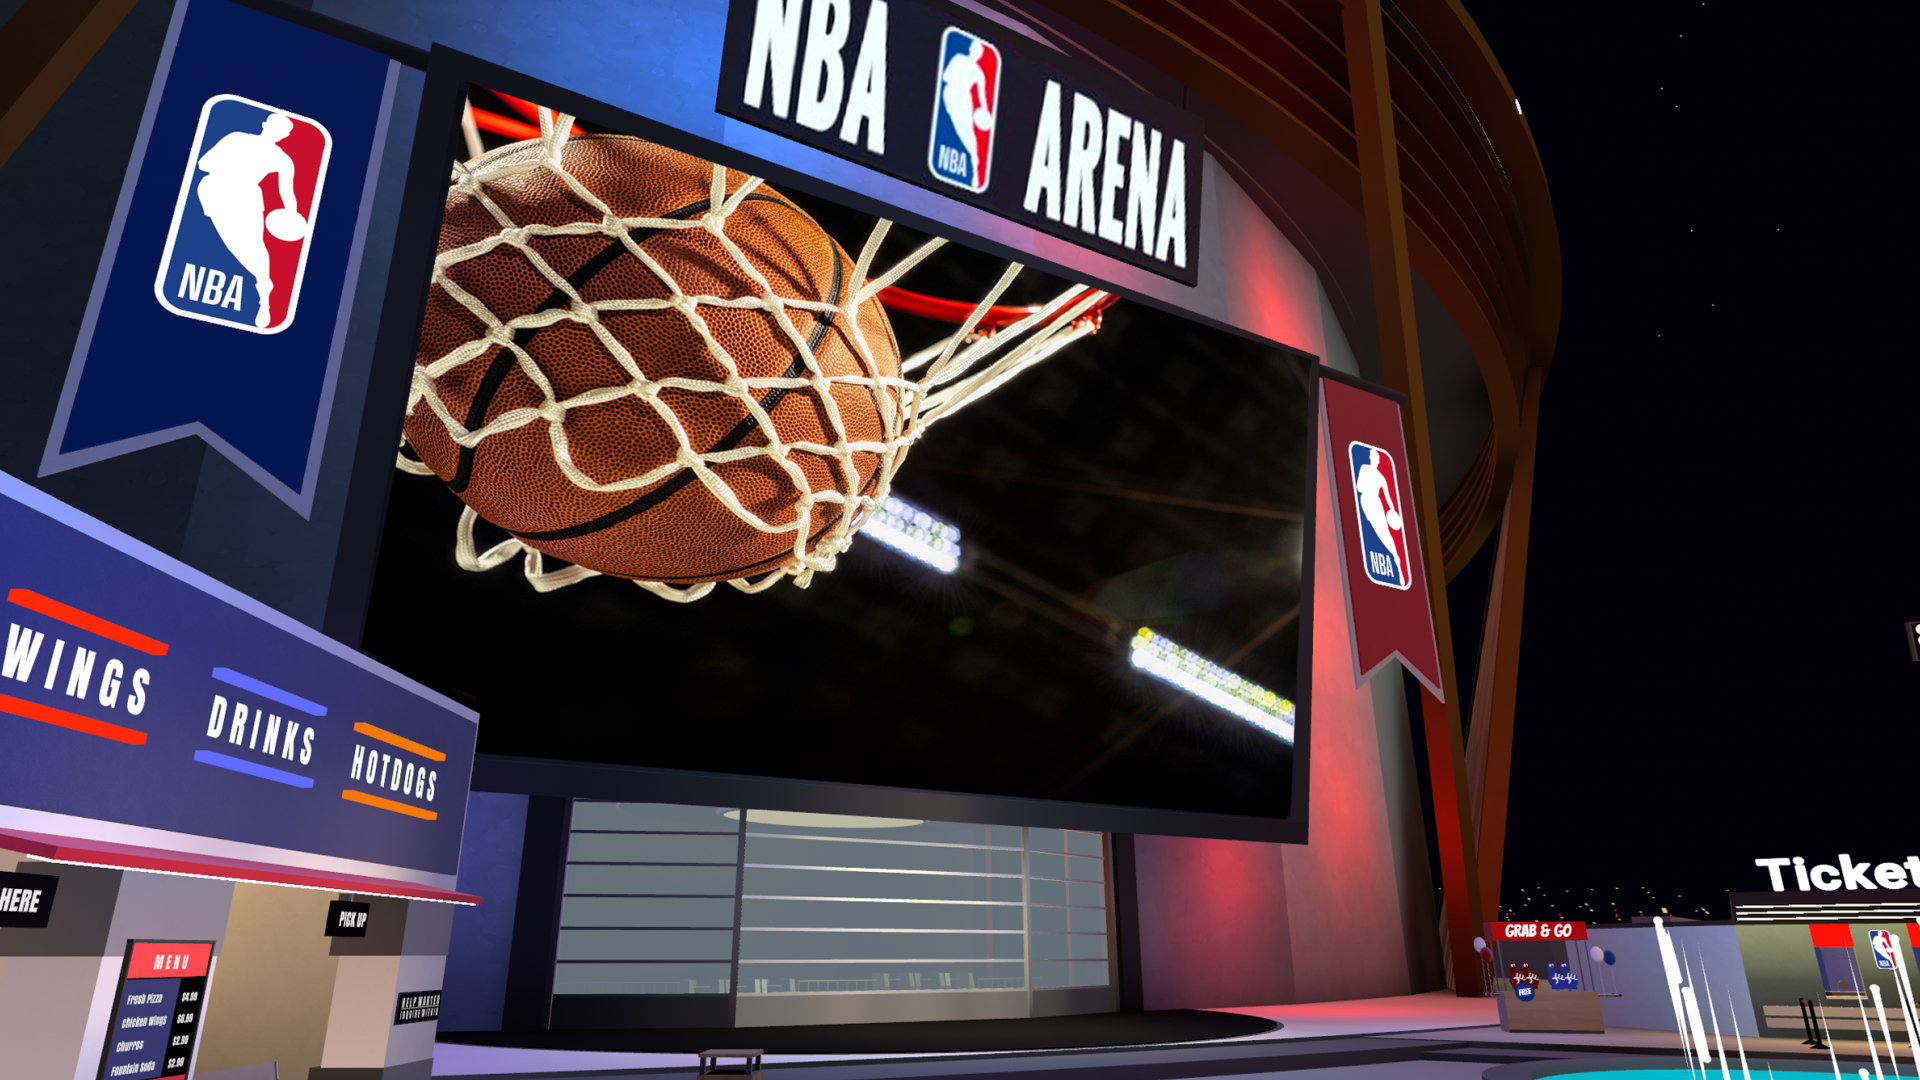 A большой экран, показывающий баскетбольный матч на виртуальном стадионе НБА с прилавком с едой и билетной кассой